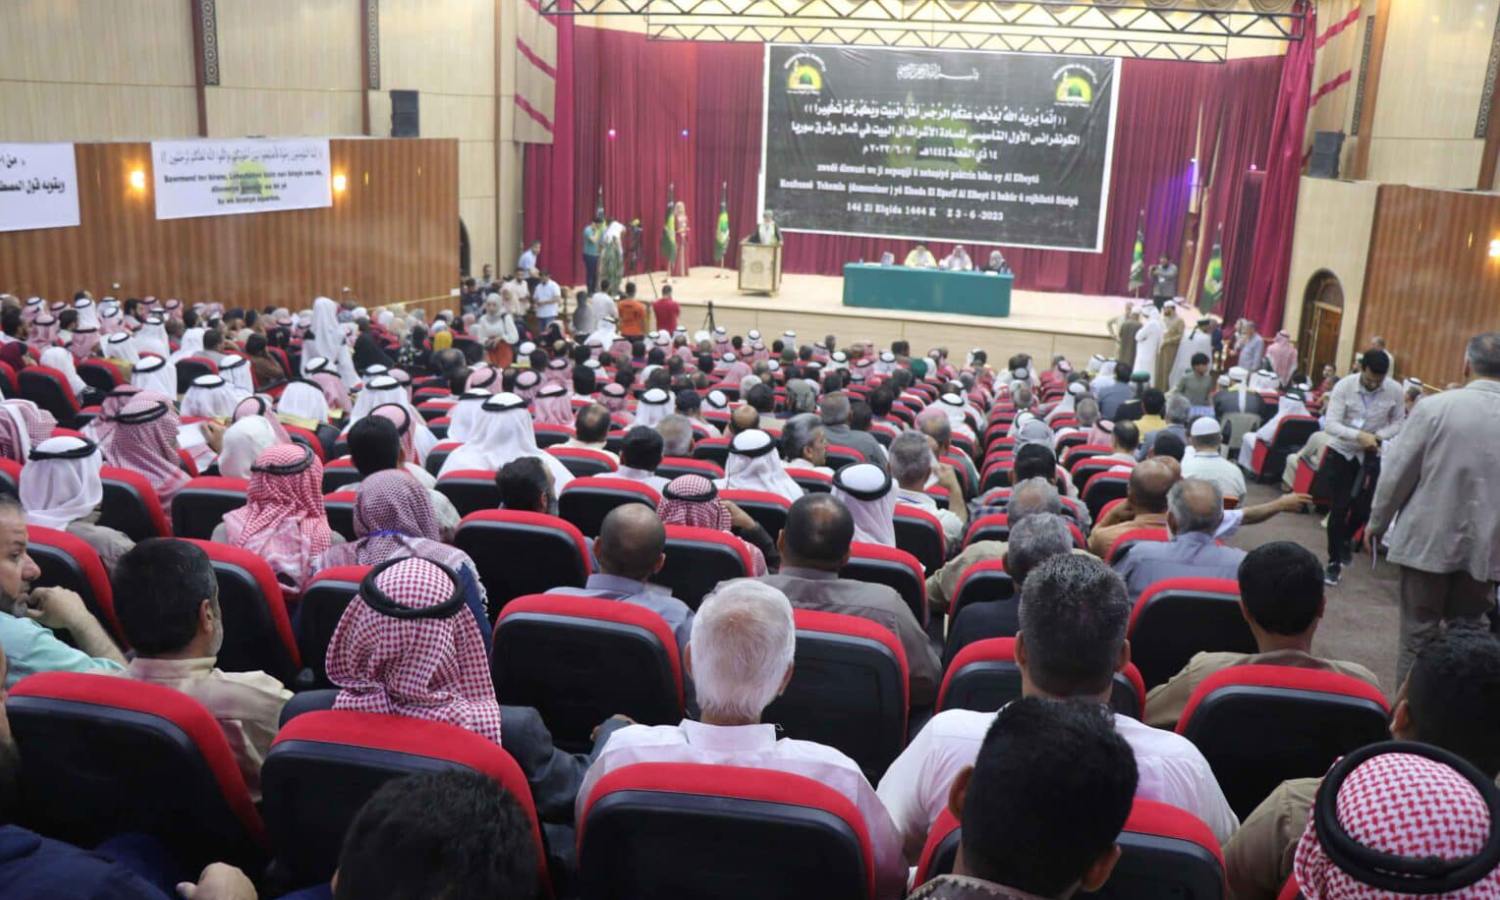 من جلسة لمؤتمر الإسلام الديمقراطي خلال الاجتماع التأسيسي الأول لـرابطة السادة الأشراف آل البيت في شمال شرقي سوريا- 3 من حزيران 2023 (الإدارة الذاتية)